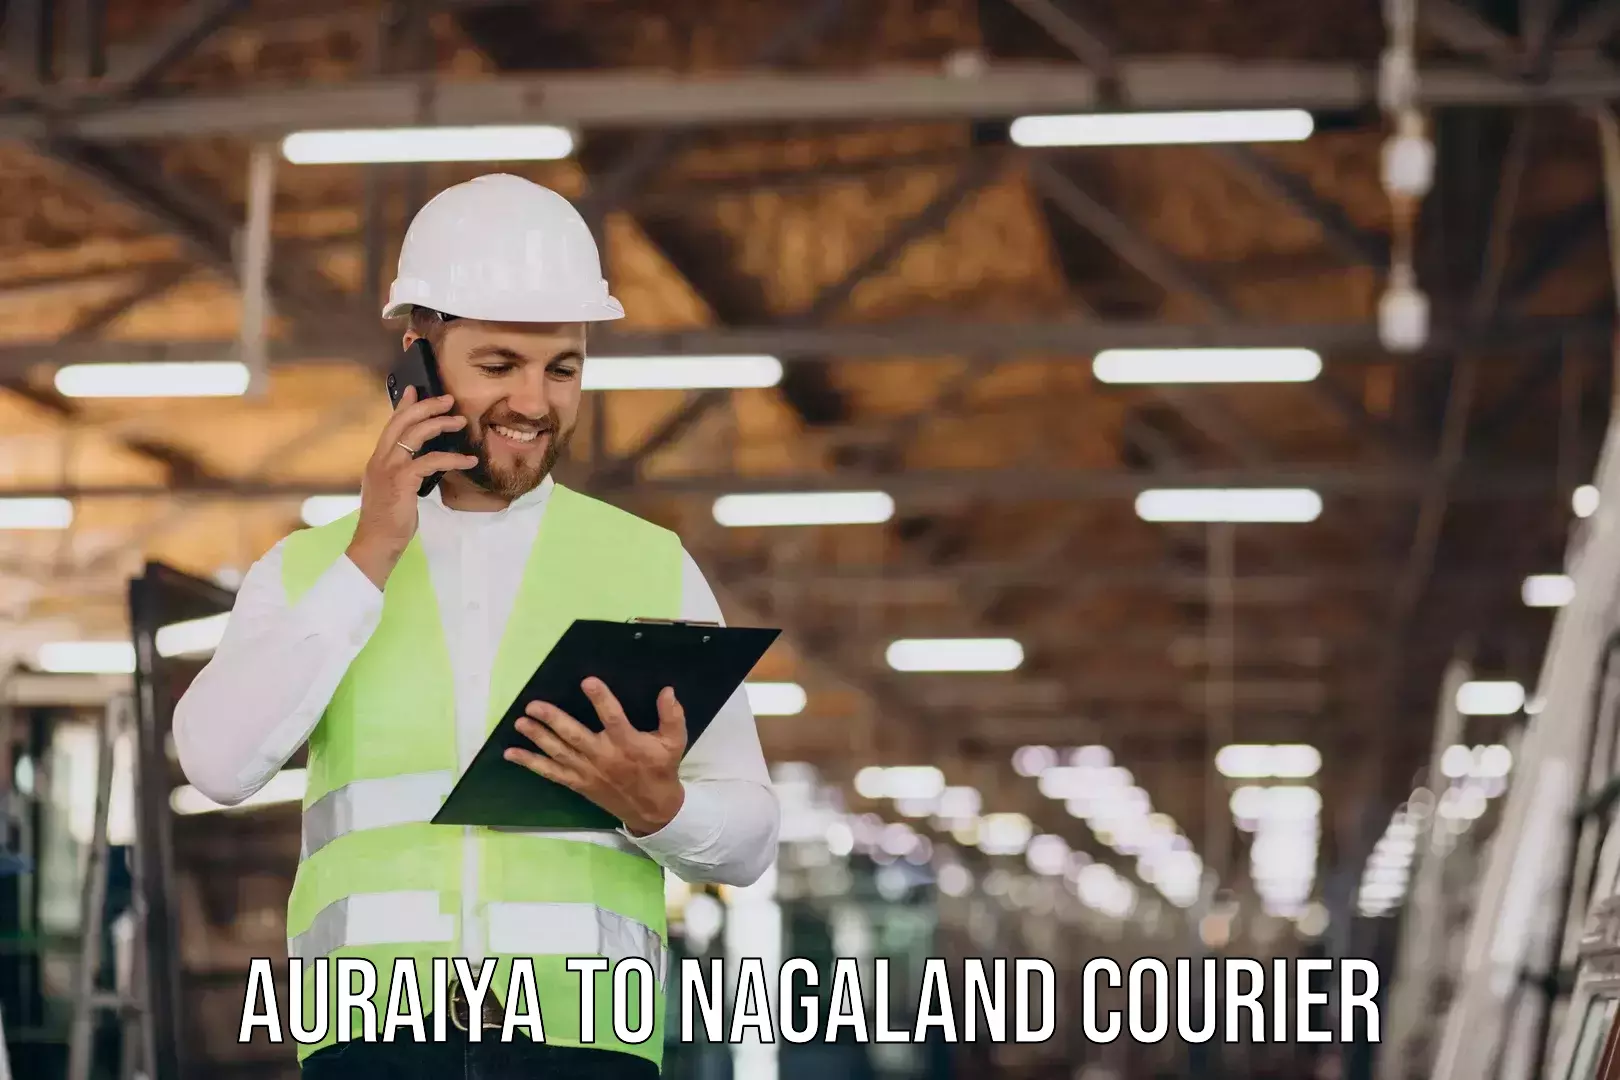 Nationwide furniture movers Auraiya to Nagaland